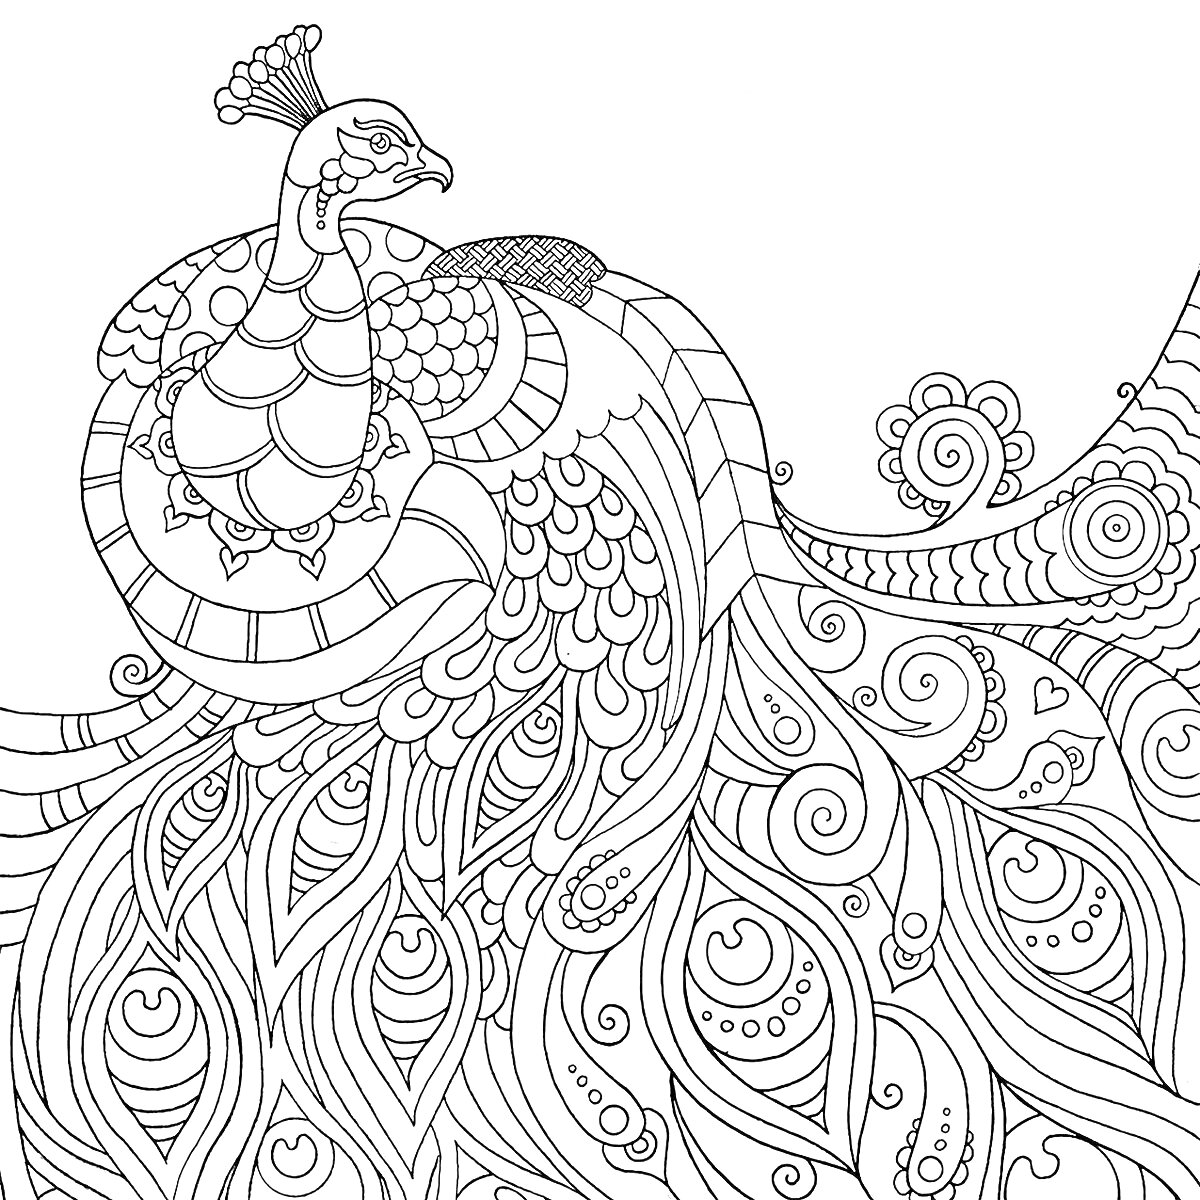 Раскраска Антистресс раскраска павлин с узорчатым хвостом и декоративными элементами